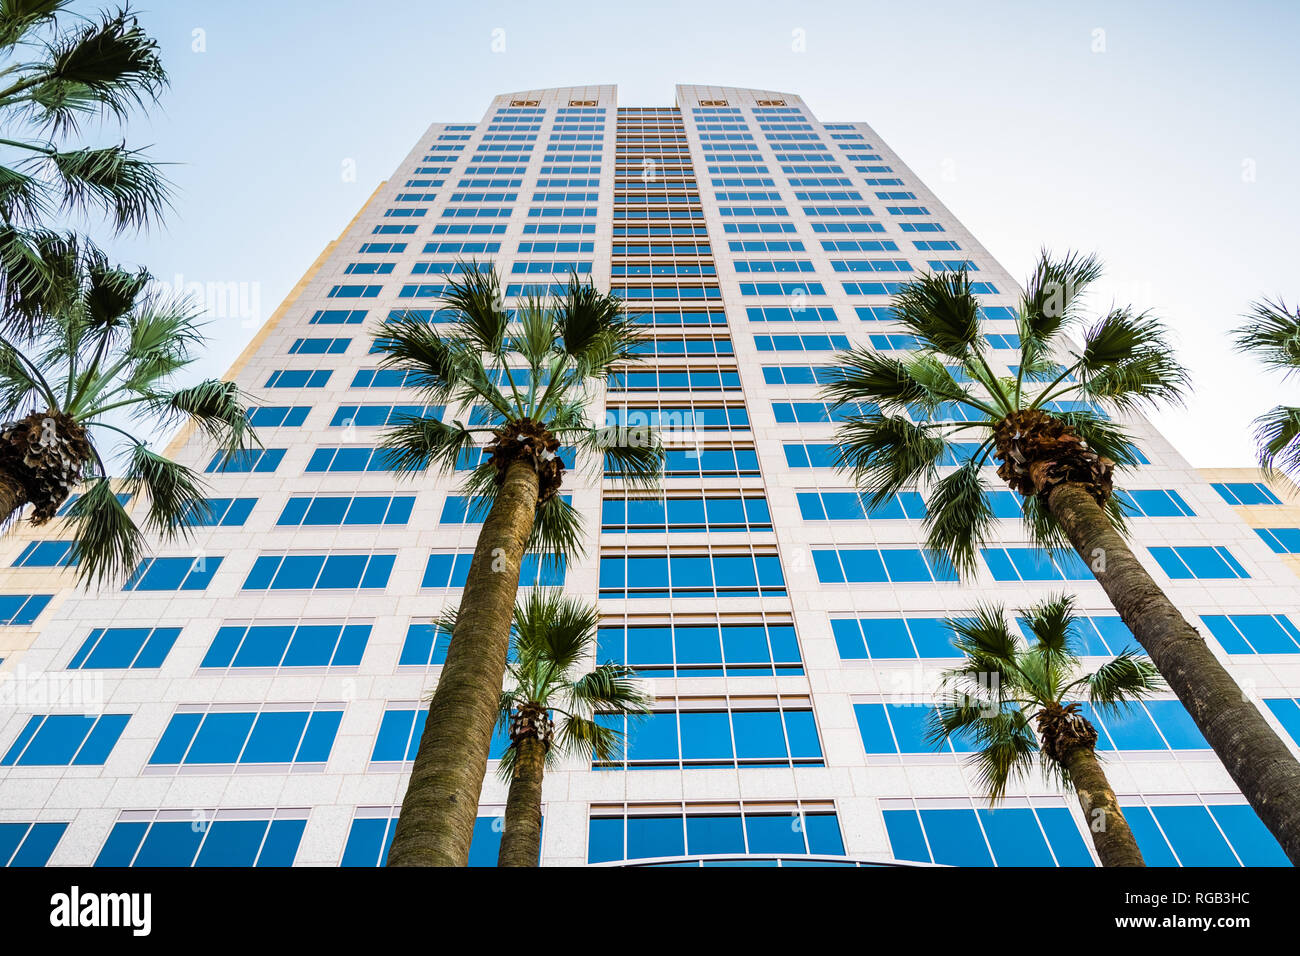 Aprile 14, 2018 a Sacramento / CA / STATI UNITI D'AMERICA - La Wells Fargo Center in downtown area è il più alto edificio della città e ospita diversi business ma Foto Stock